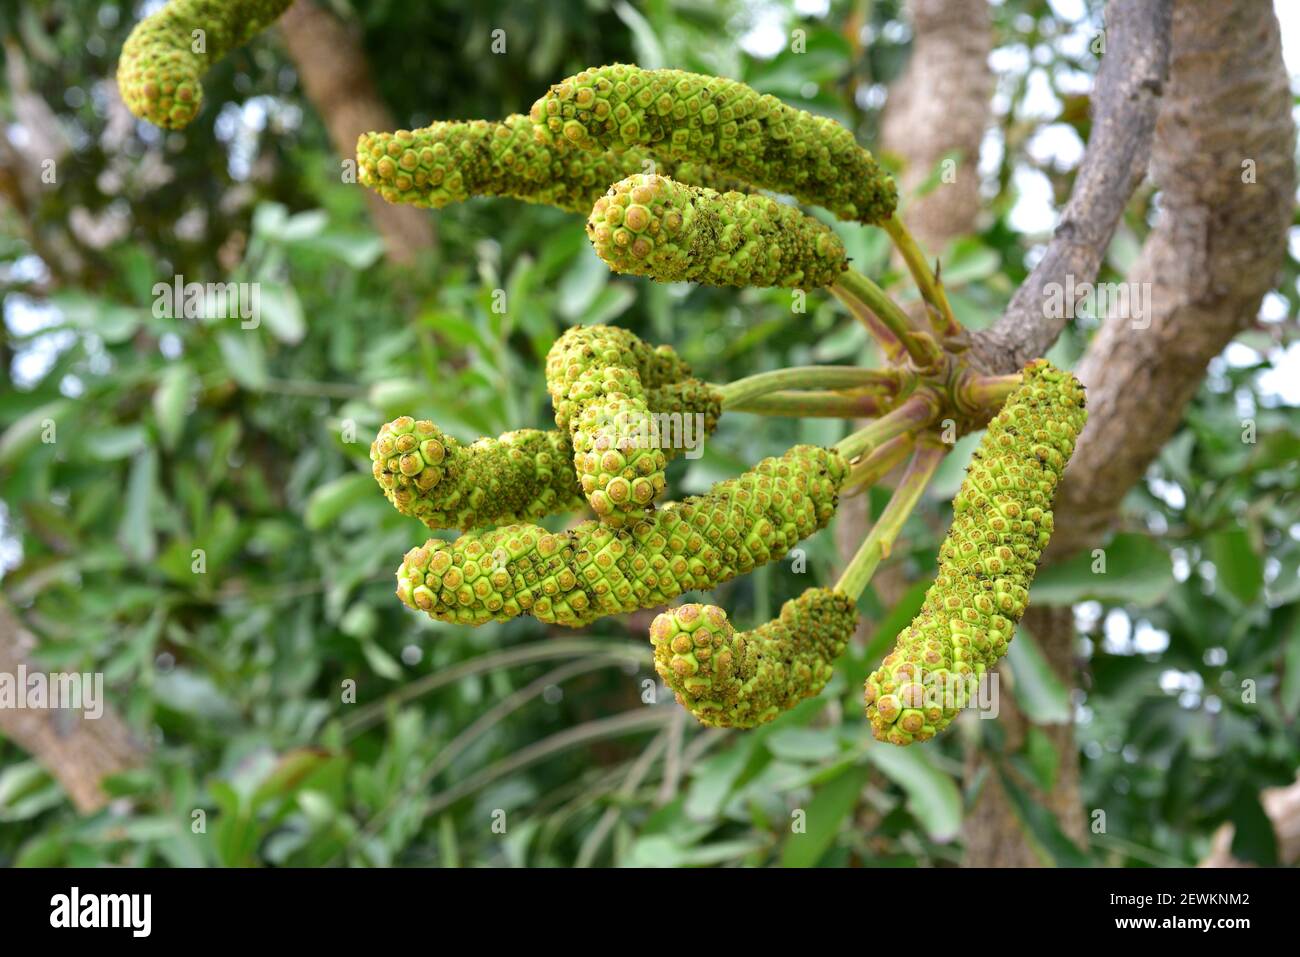 El árbol de la col rizada (Cussonia spicata) es un árbol perenne medicinal nativo del sureste de África. Frutas. Foto de stock